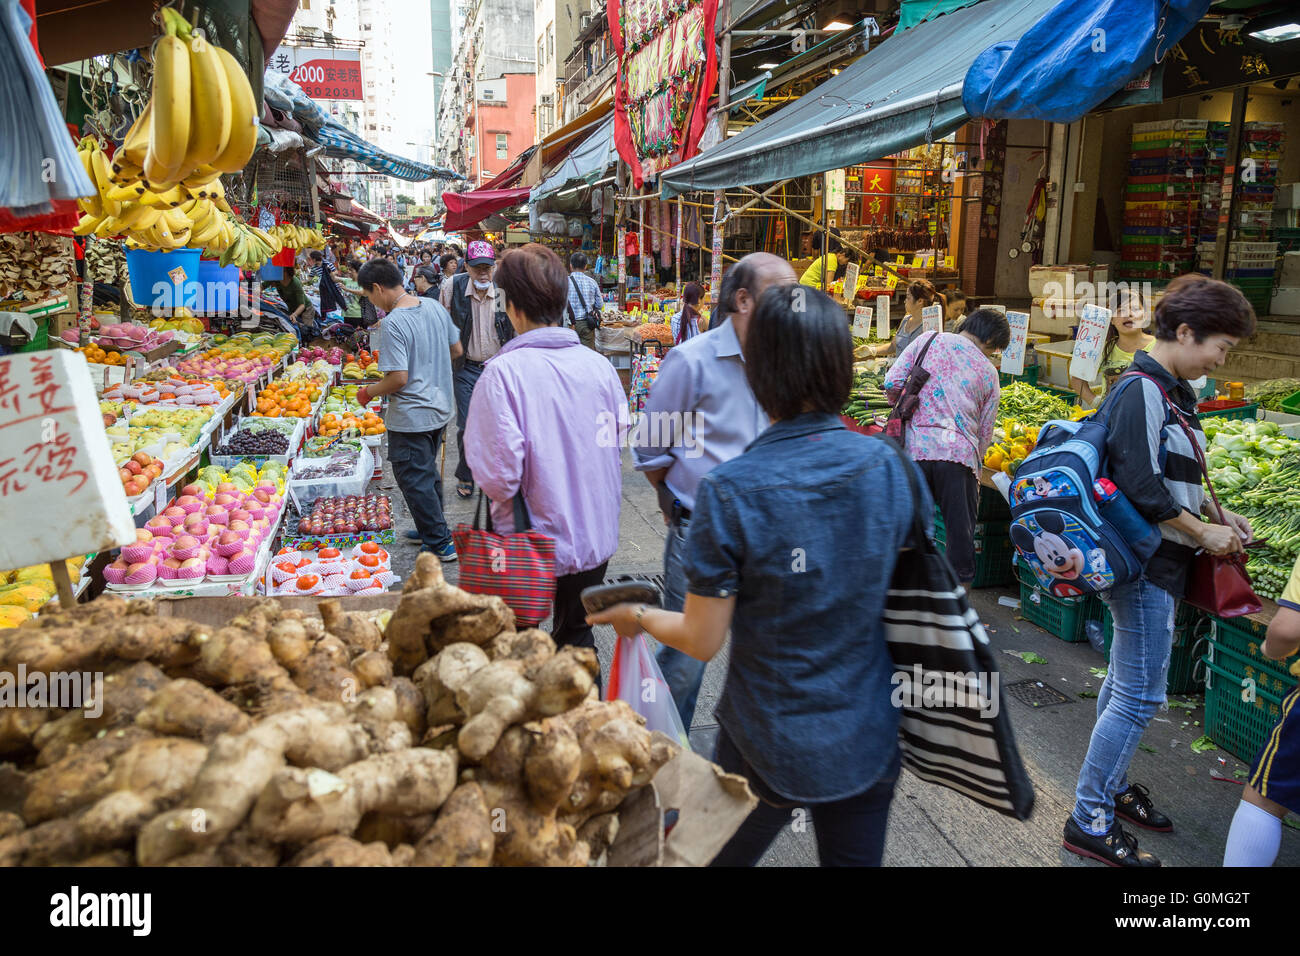 Menschen zwischen den Ständen voller Früchte und Gemüse auf dem Straßenmarkt in Tai Po, Hong Kong, China. Stockfoto